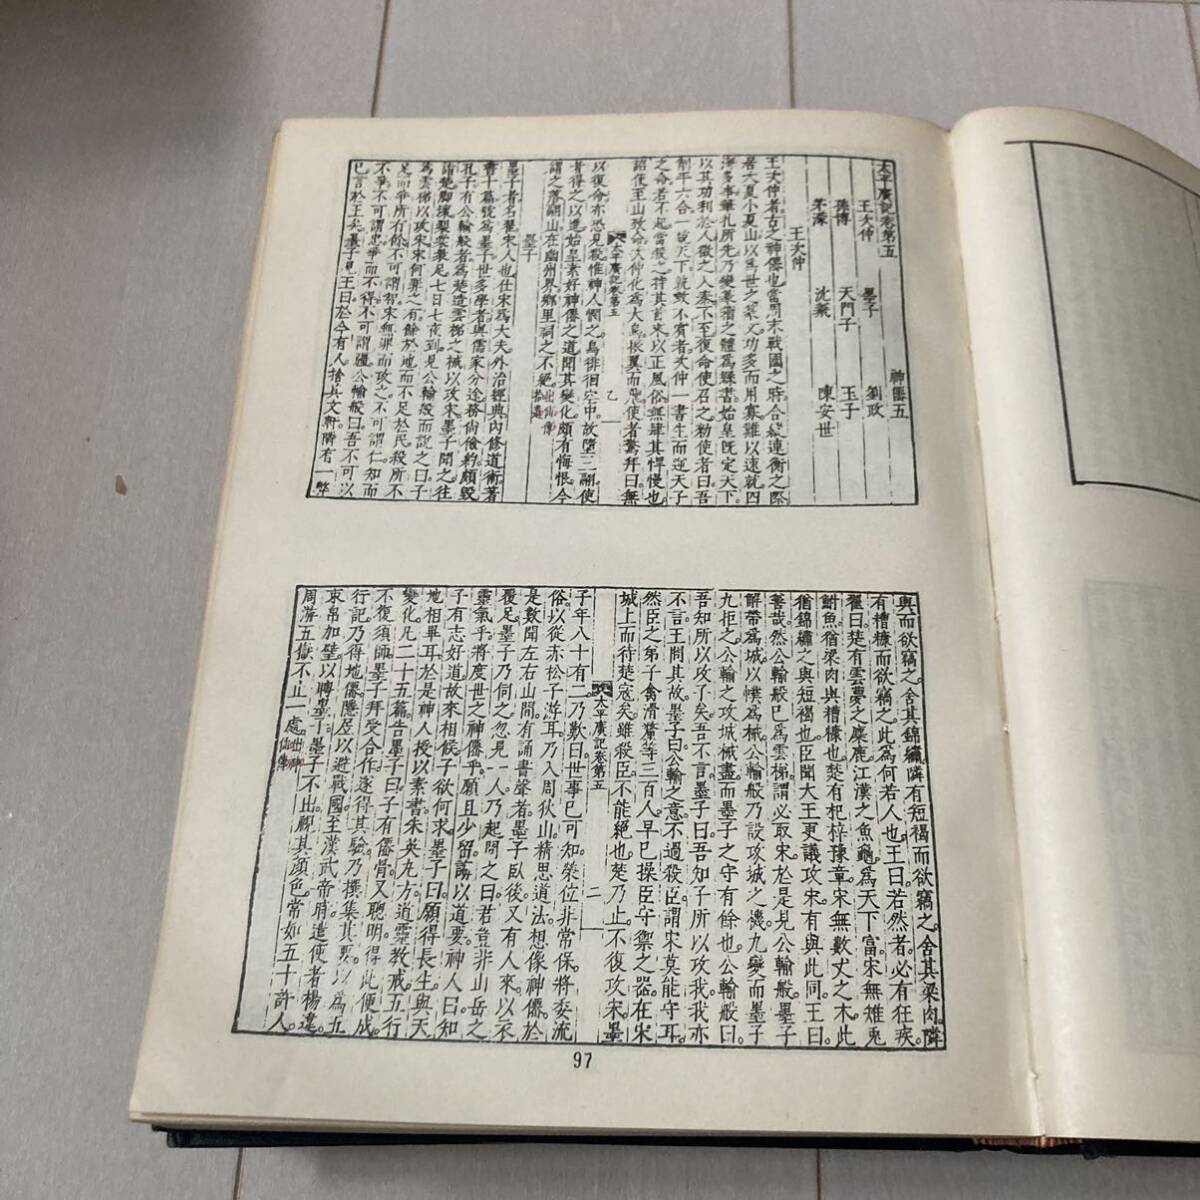 J 1972 год выпуск Tang книга@. печать версия . оборудование книга@ China документ [..книга@ futoshi flat . регистрация ] все 2 шт. .